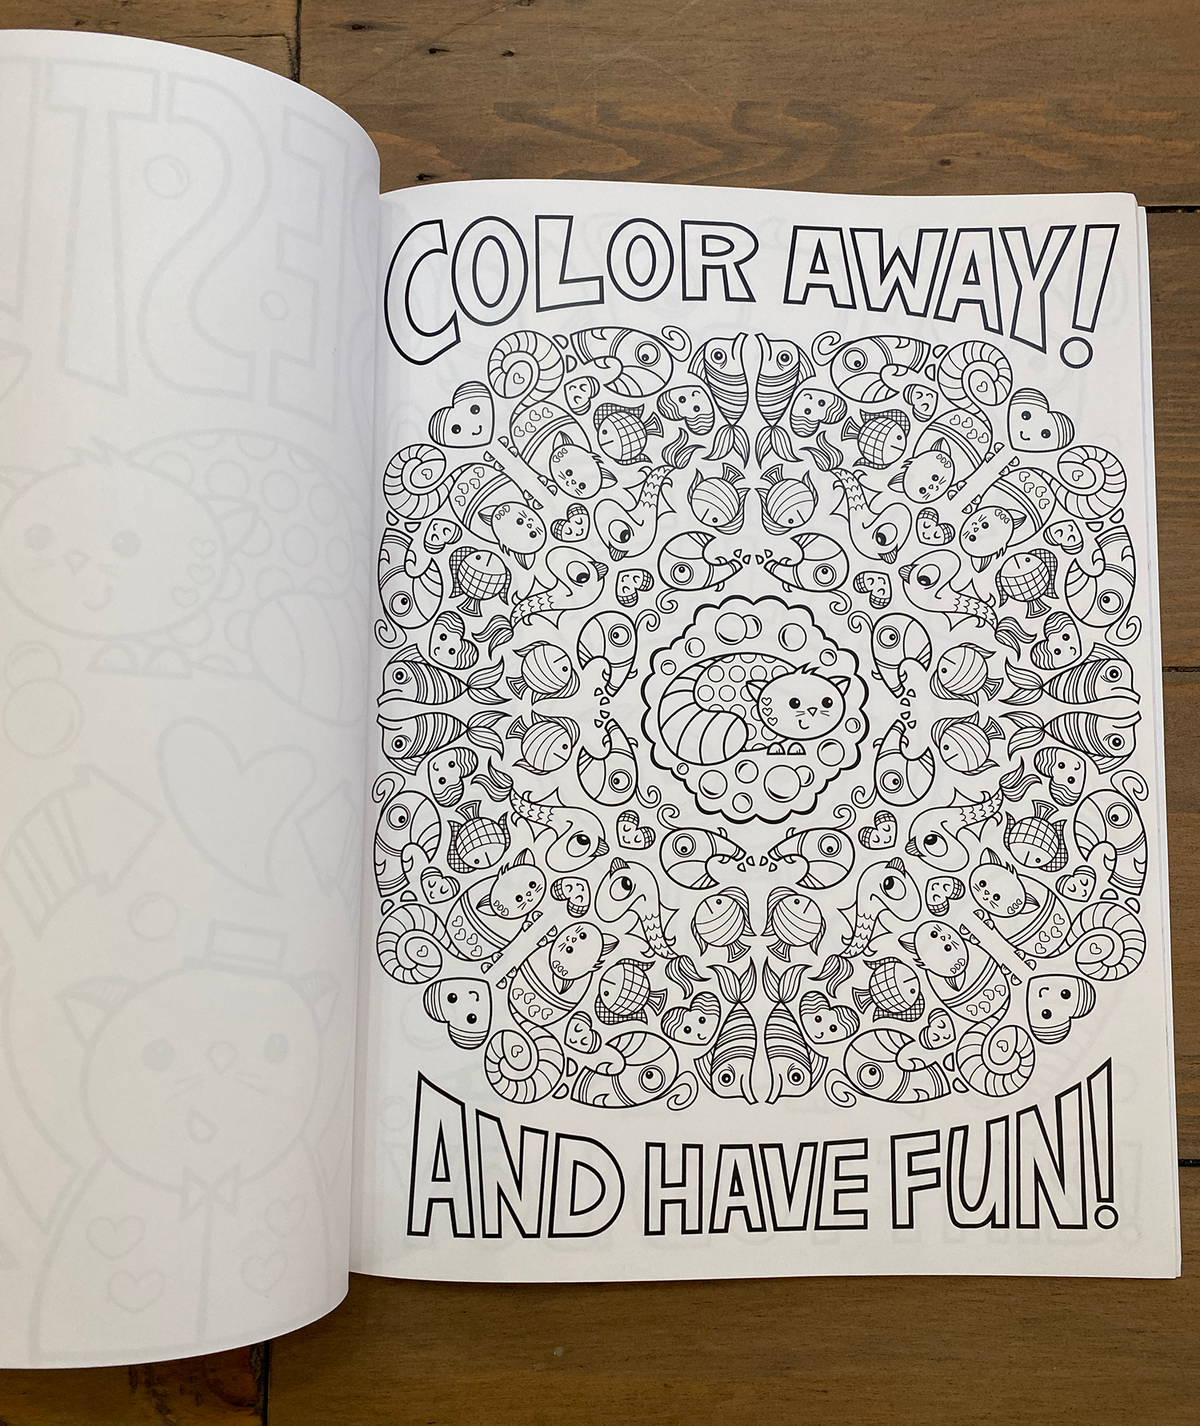 You Are So Rad! A Super Fun Coloring Book By Nan Coffey